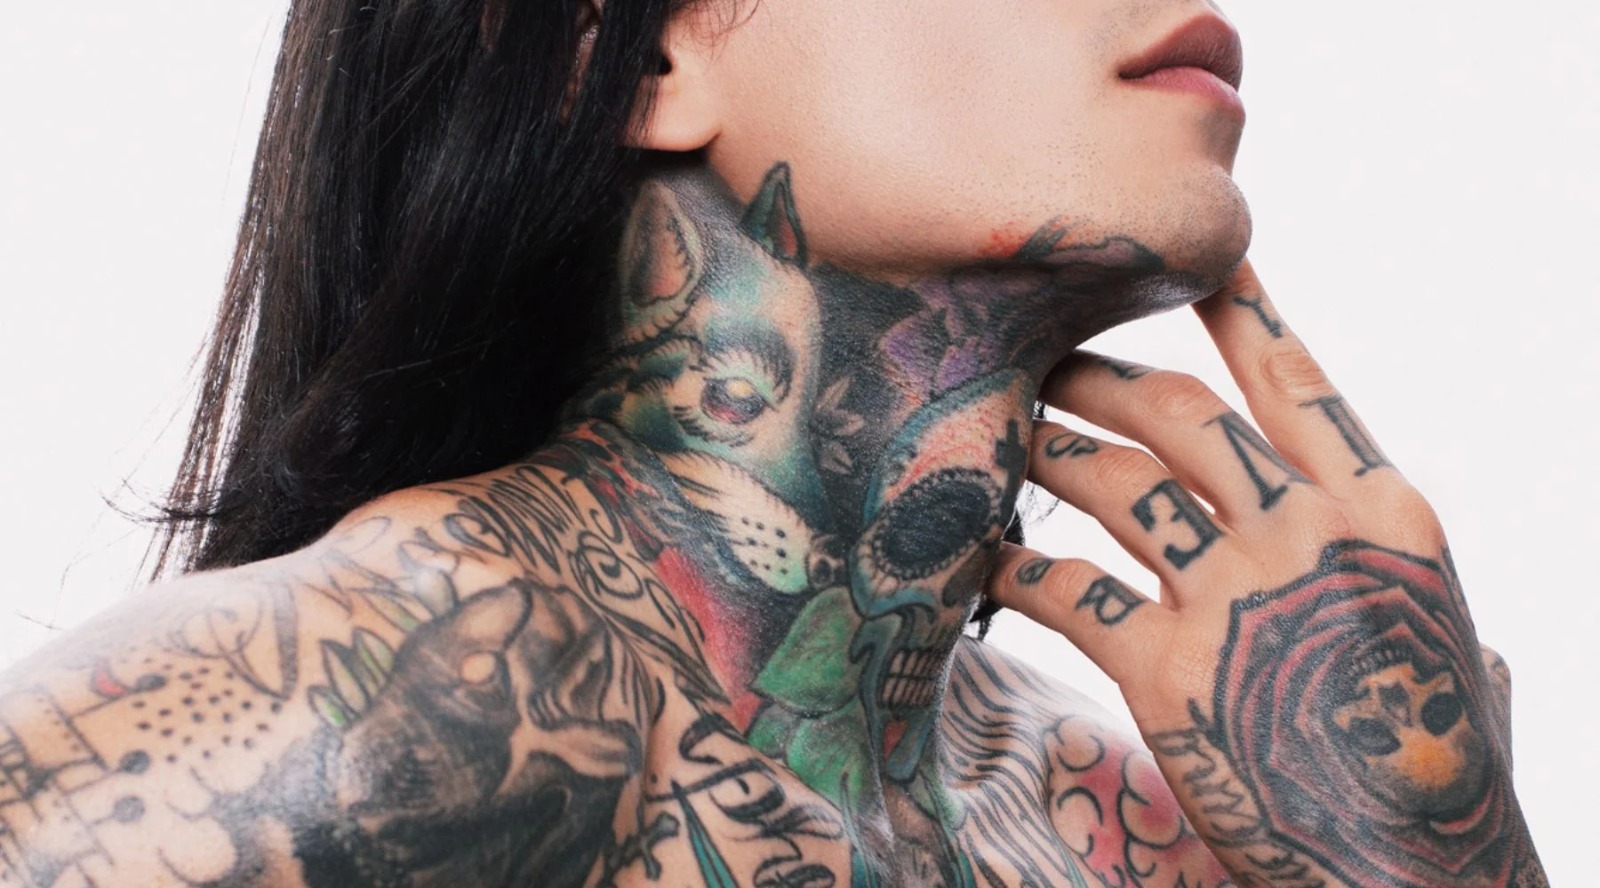 ENQUETE: Você tem preconceito com quem usa tatuagens?